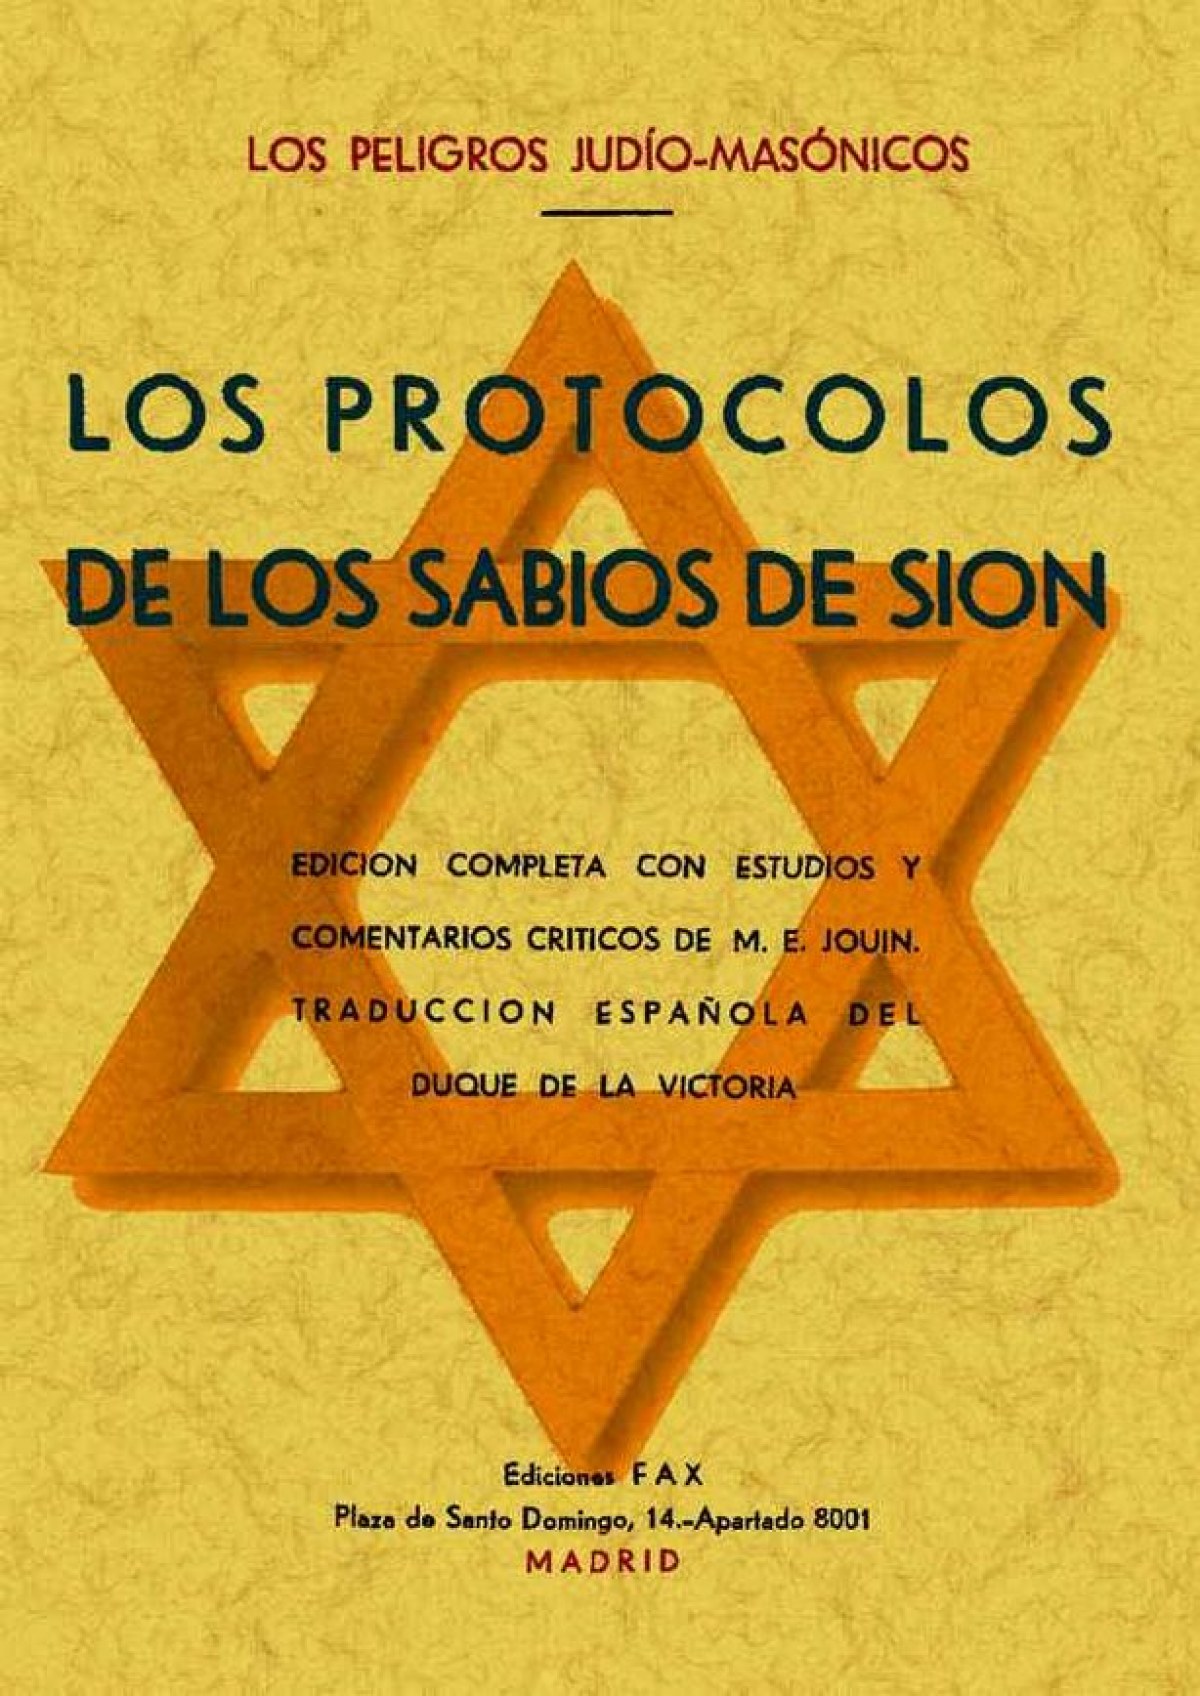 Los protoclos de los sabios de Sión (Los peligros judío-masónicos) - Anónimo